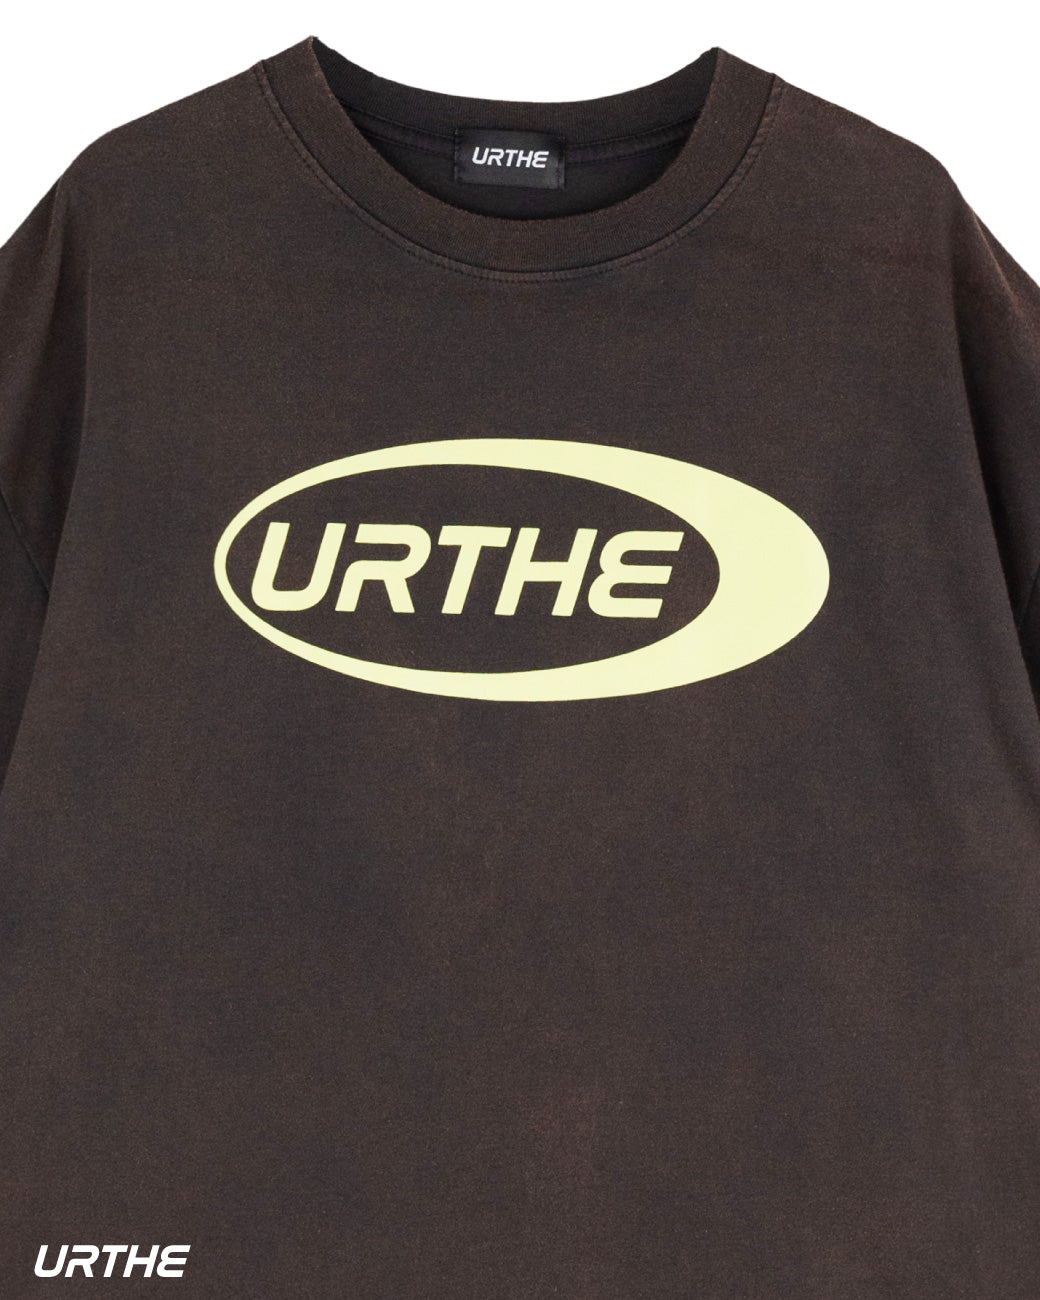 URTHE - เสื้อยืด ผ้าฟอก เเขนสั้น รุ่น DARKGRAY ACID